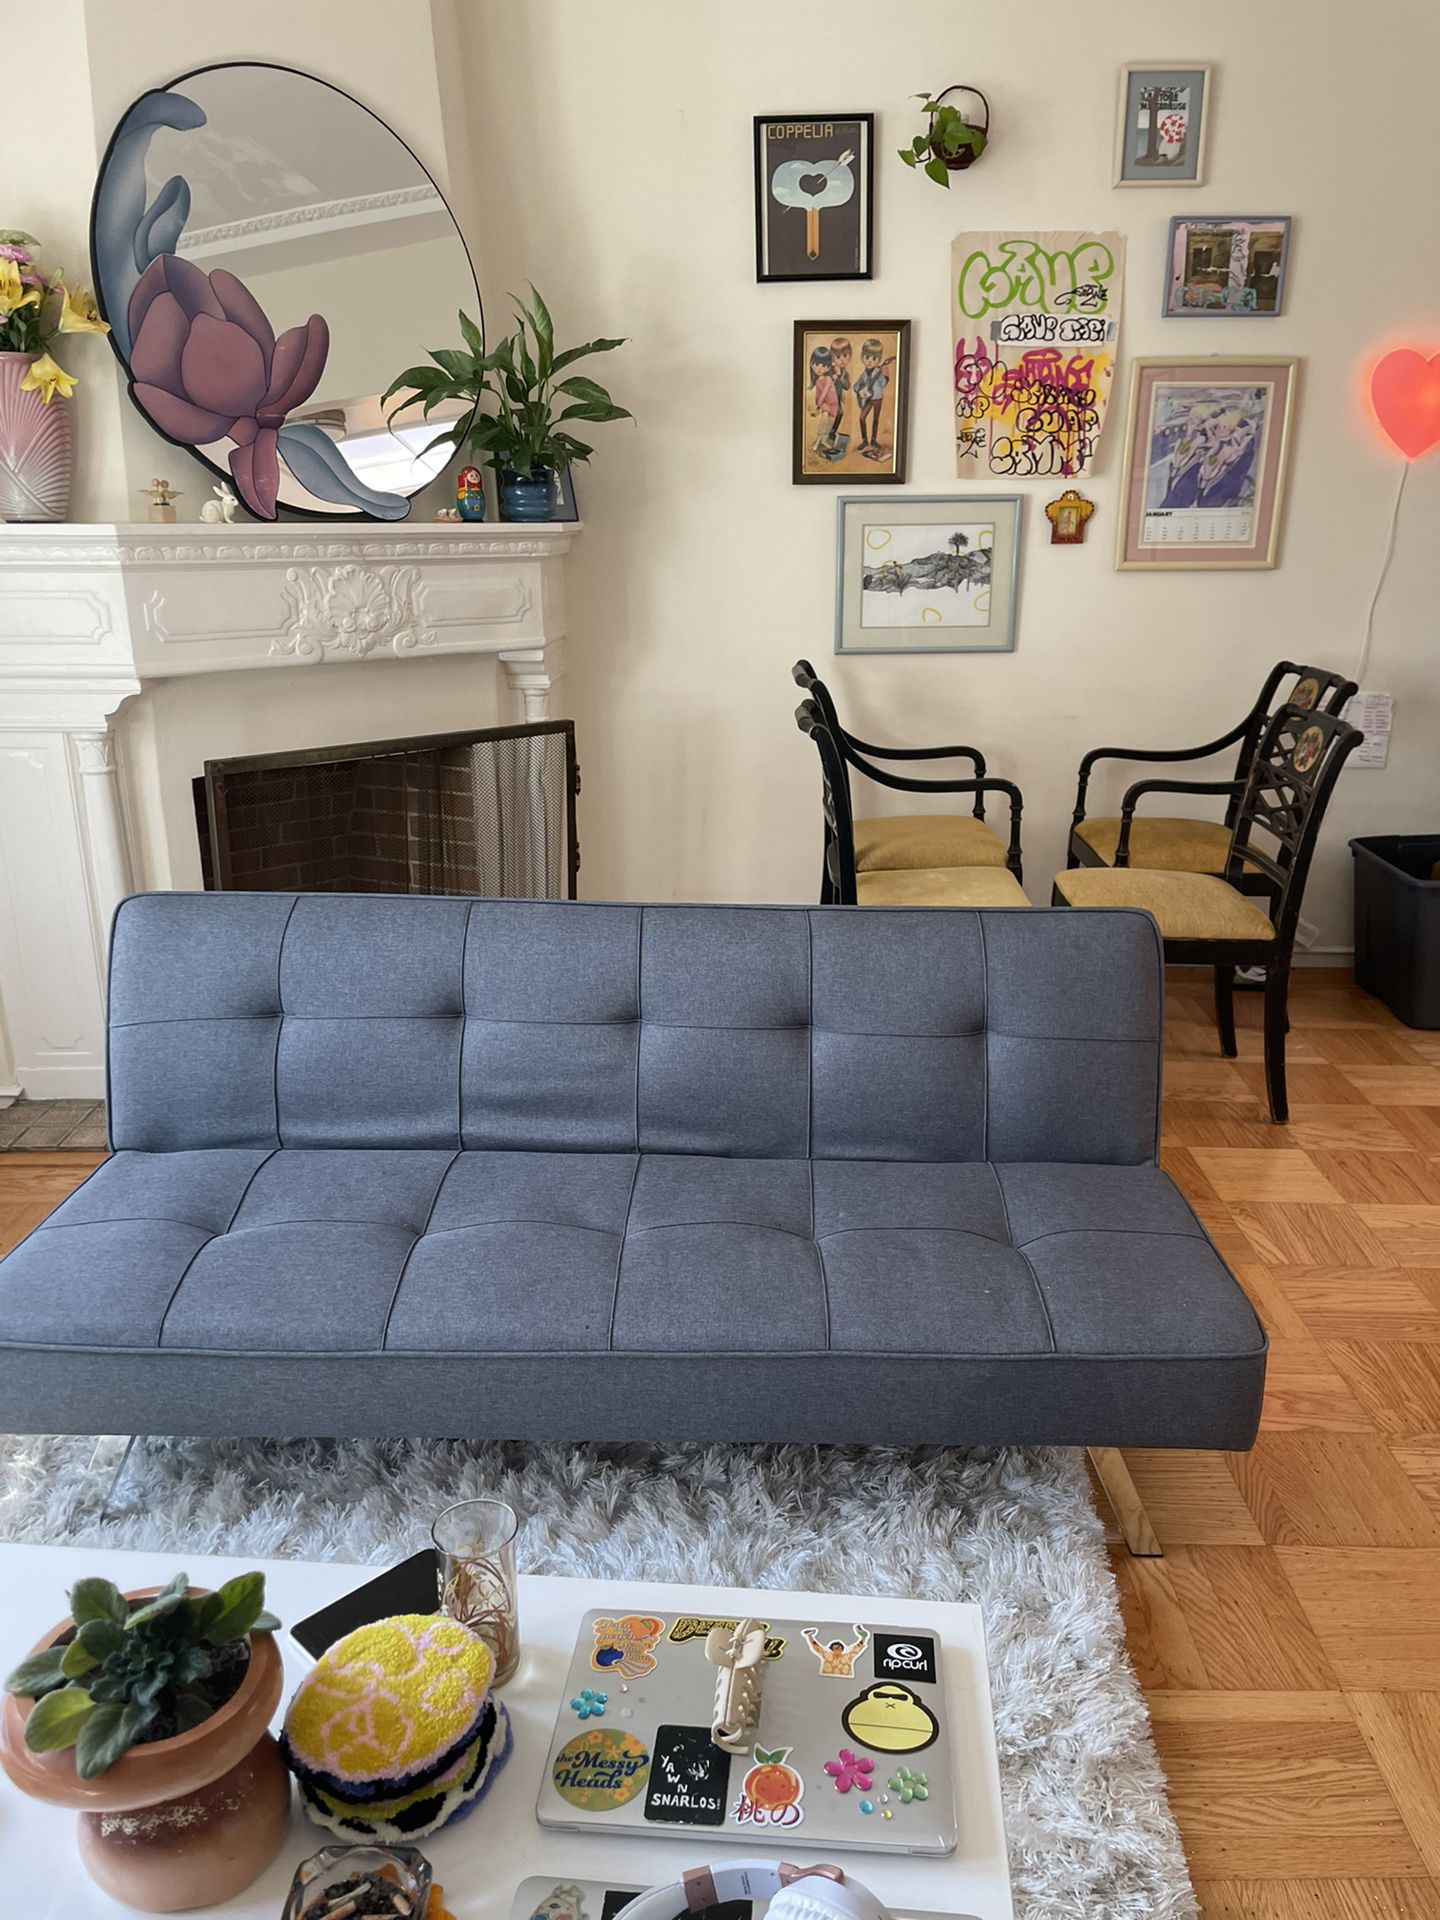 Modern Sleek Grey Futon Couch Sofa